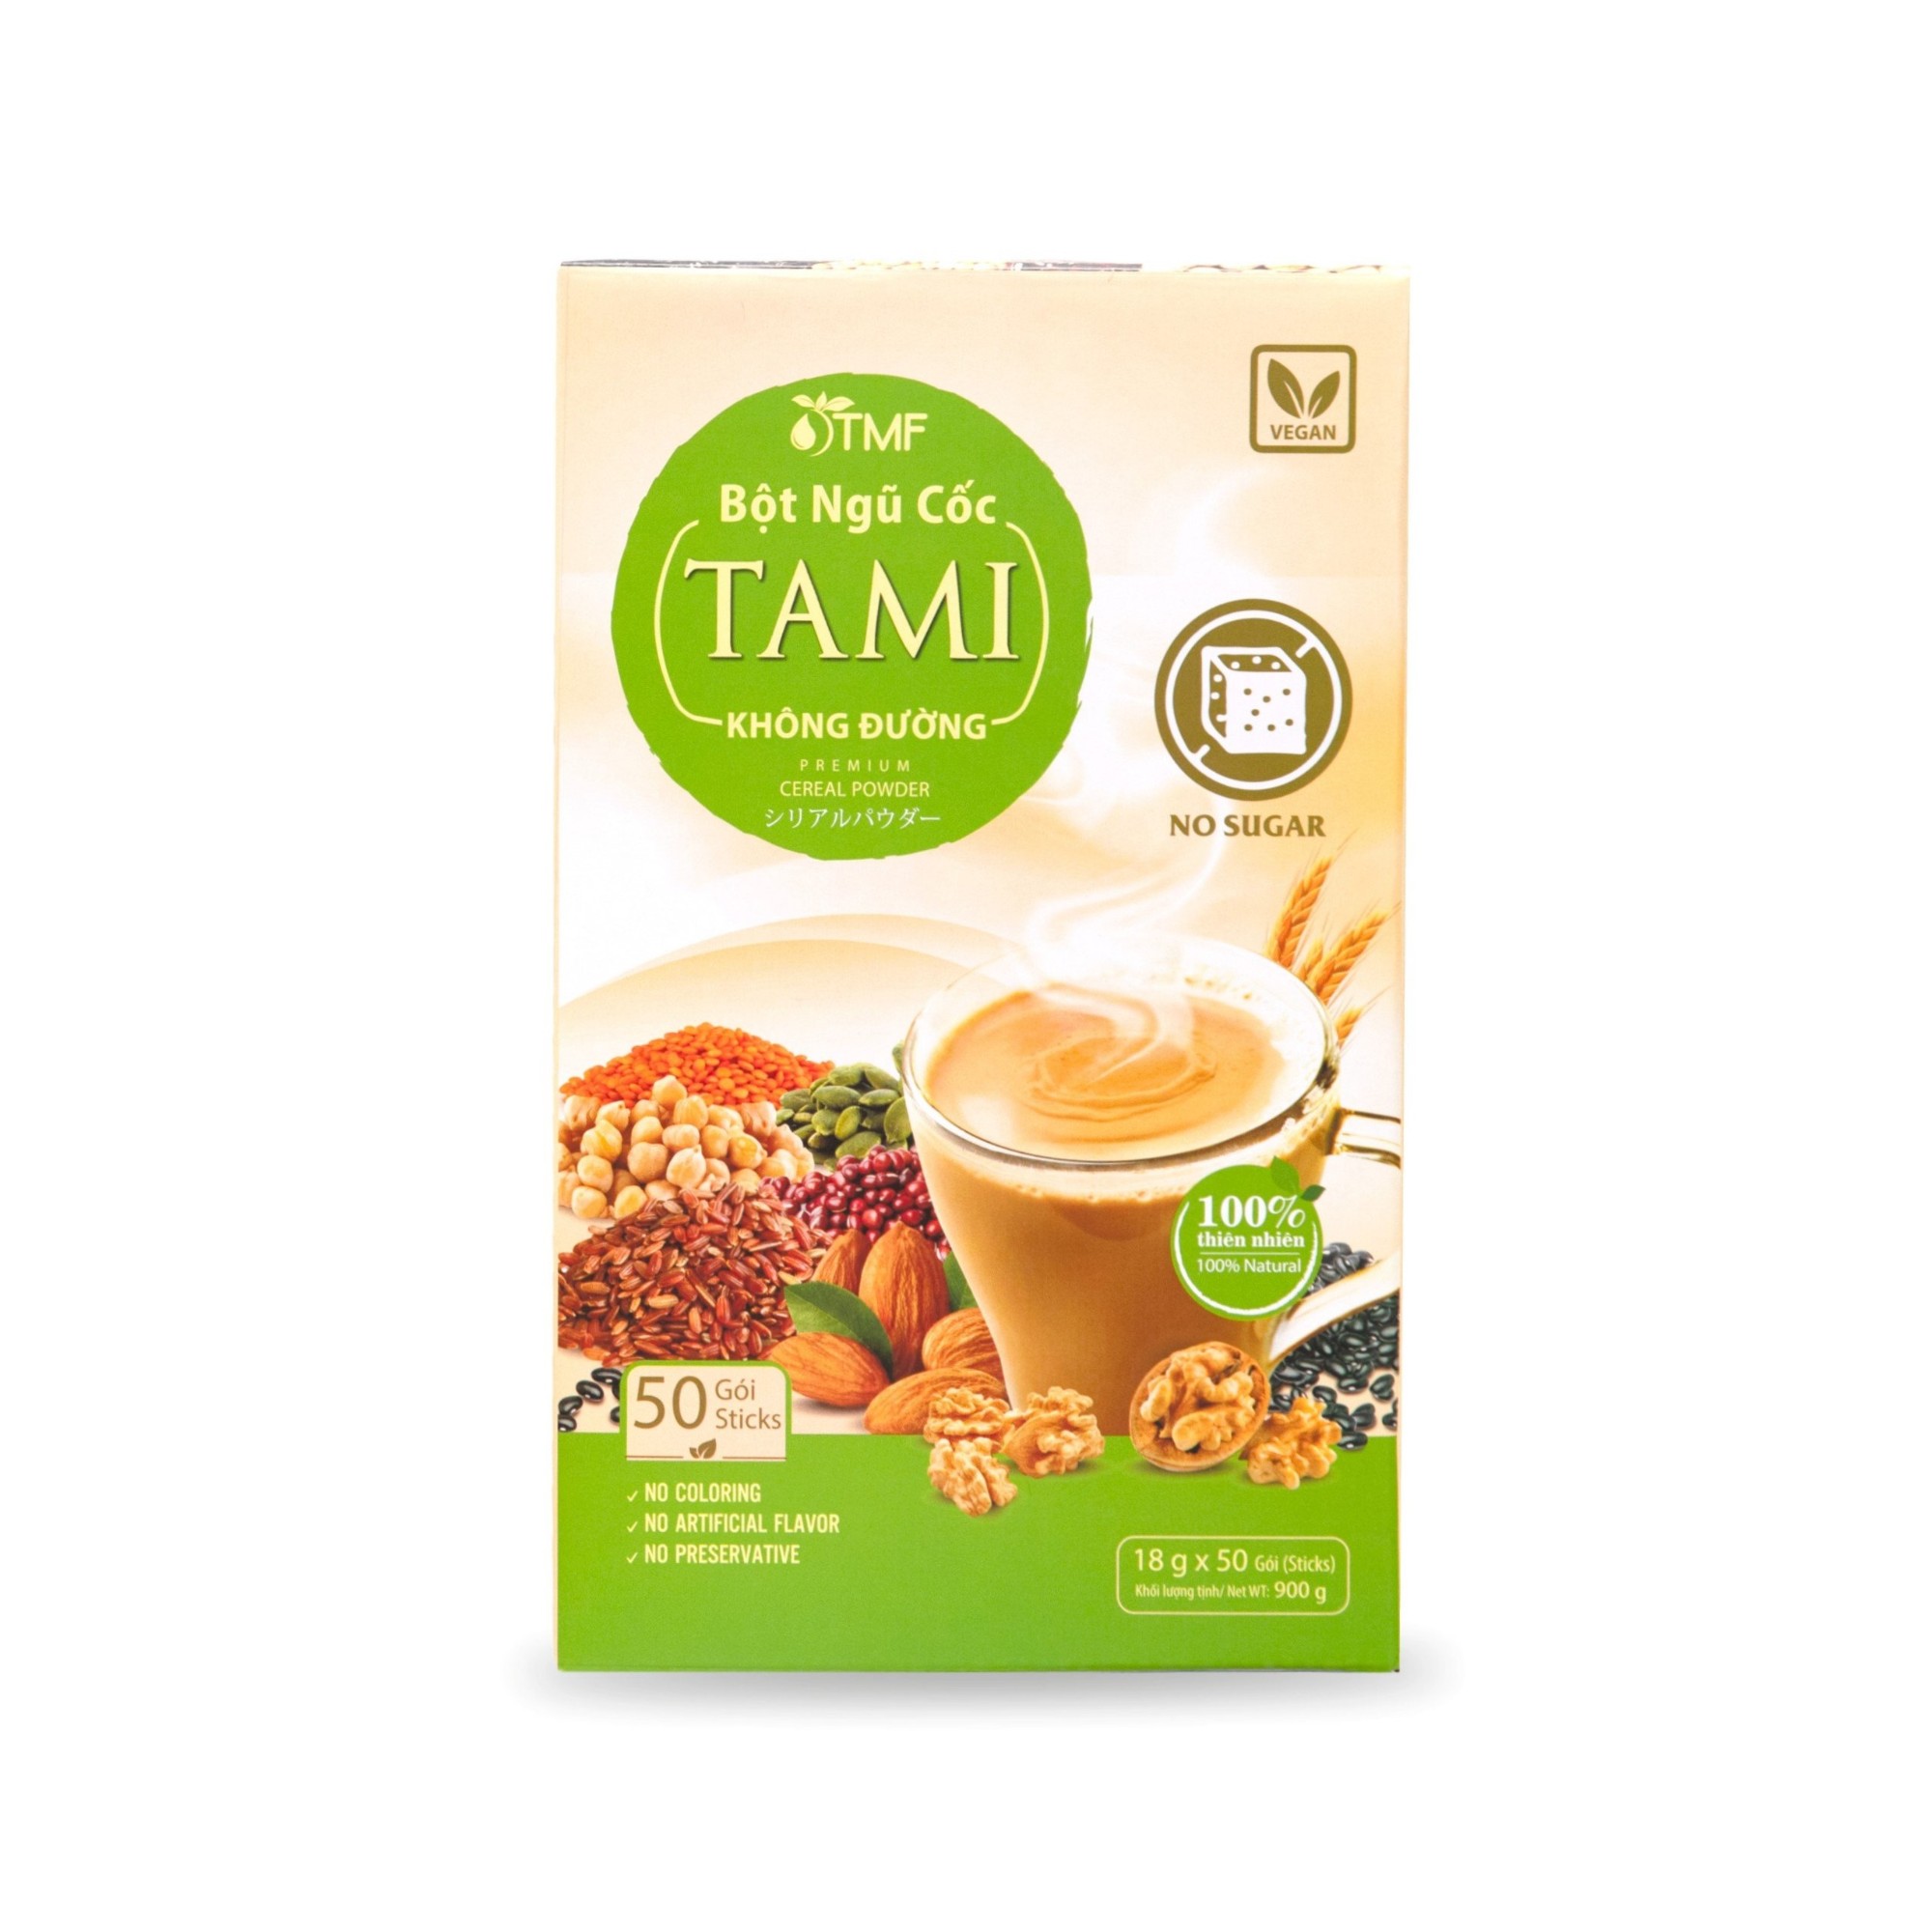 Bột ngũ cốc TAMI không đường 900g